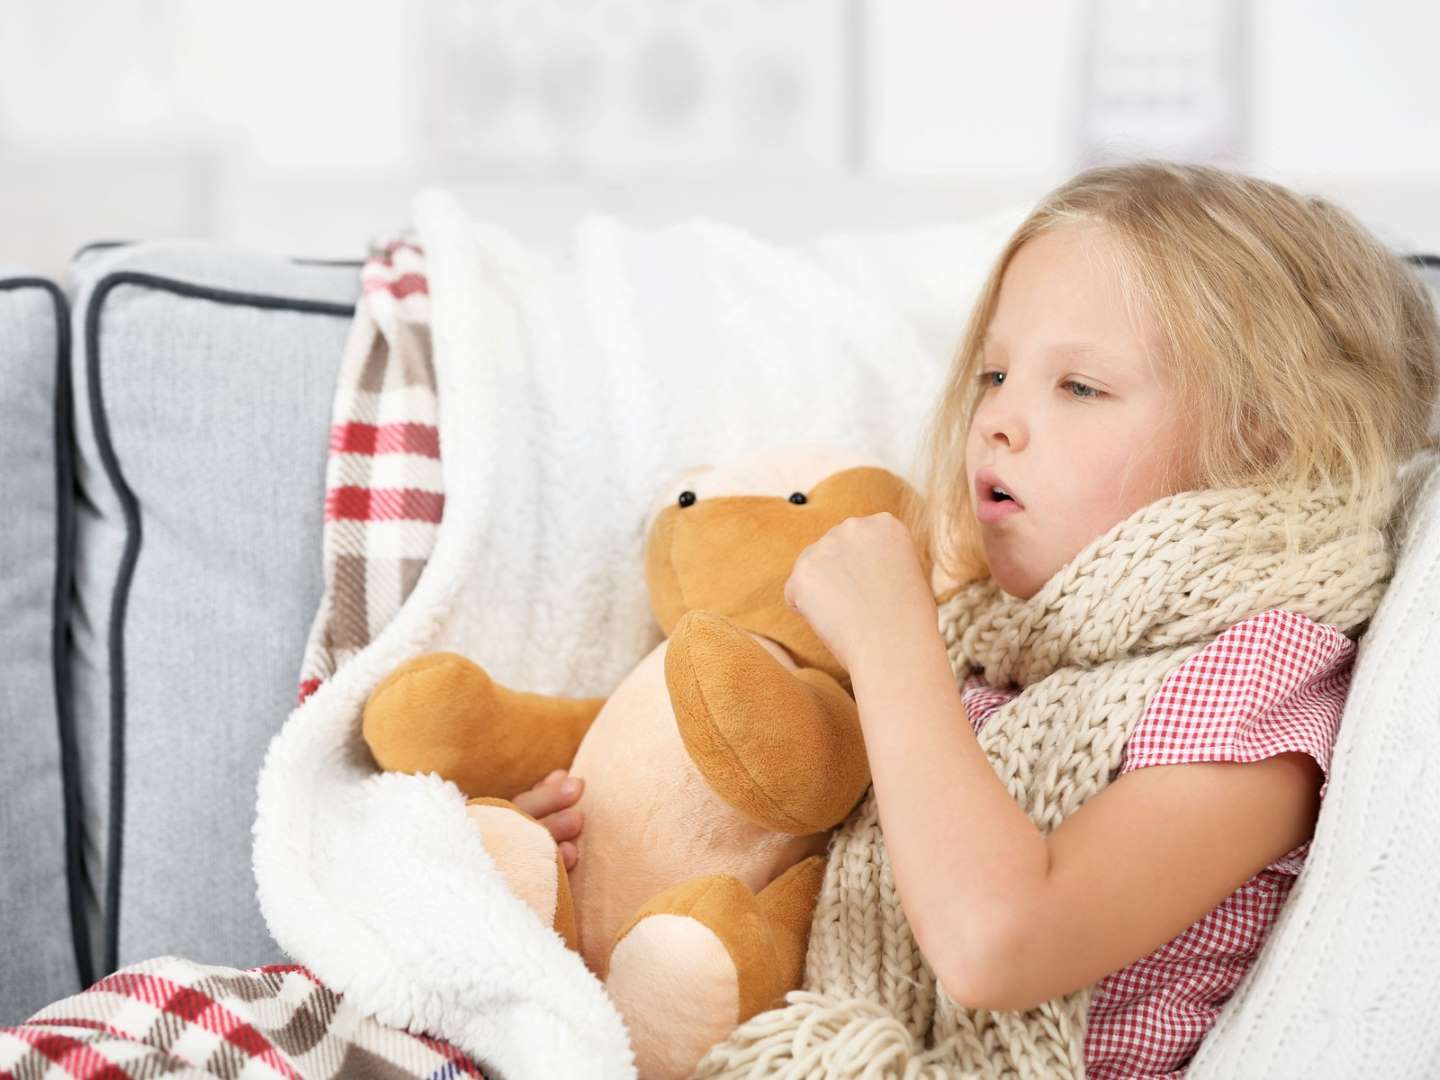 focar de gripă , fetita racita ce sta in pat cu un ursulet de plus in brate